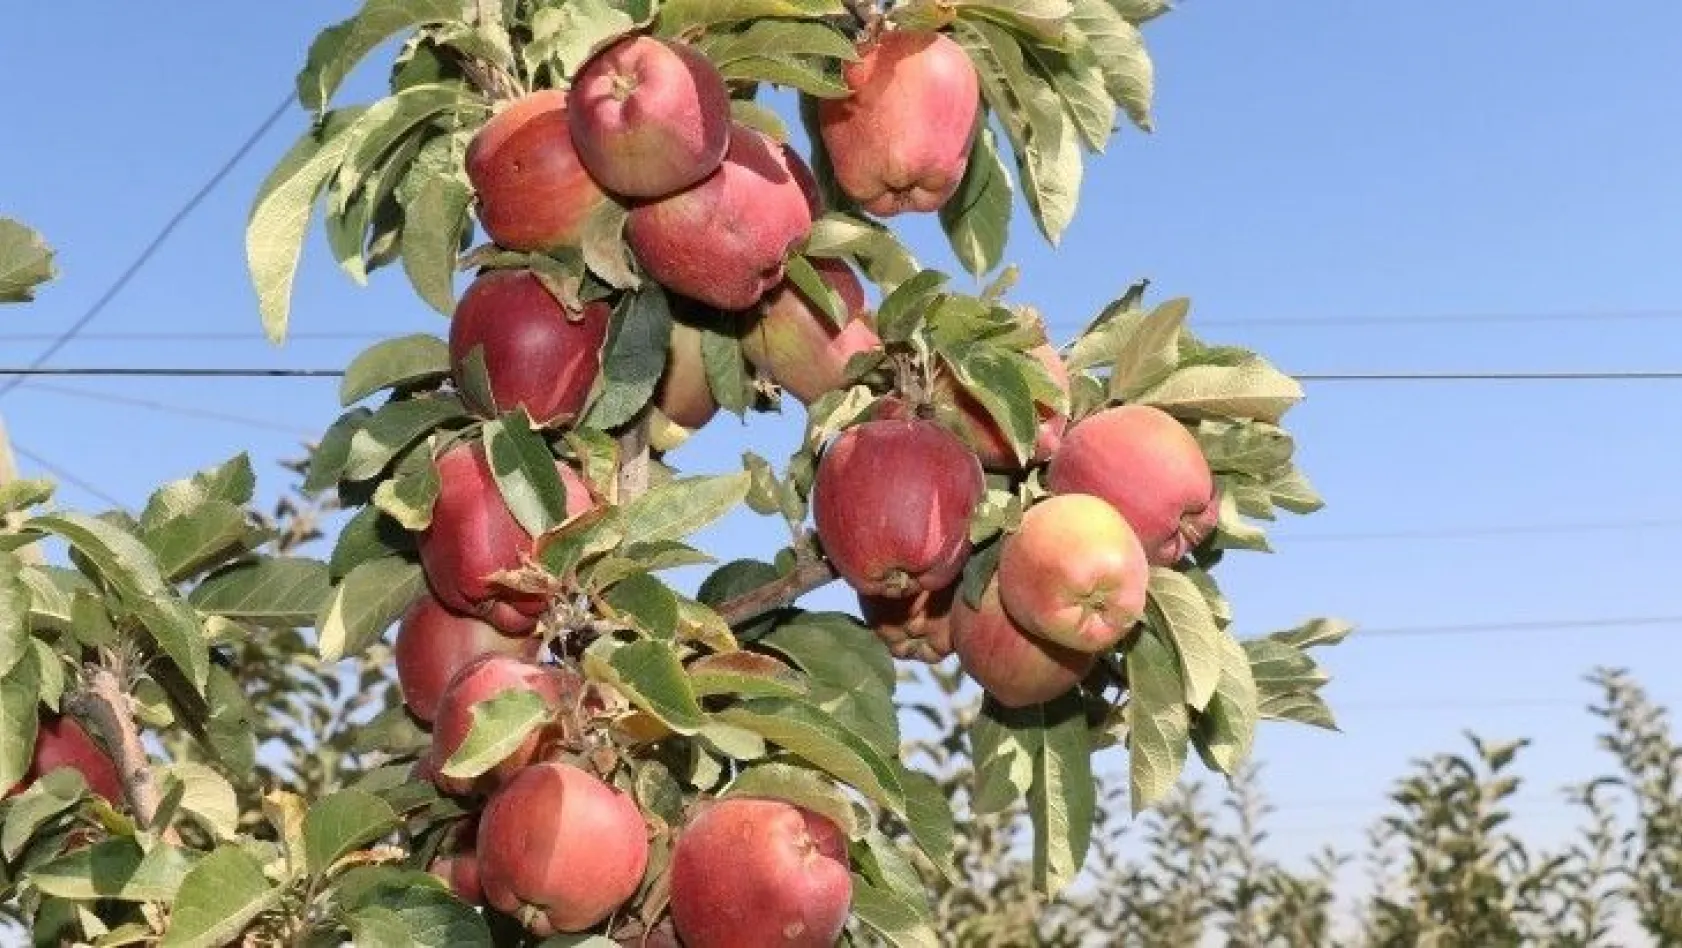 Elazığ'da kırmızı elma hasadı başladı